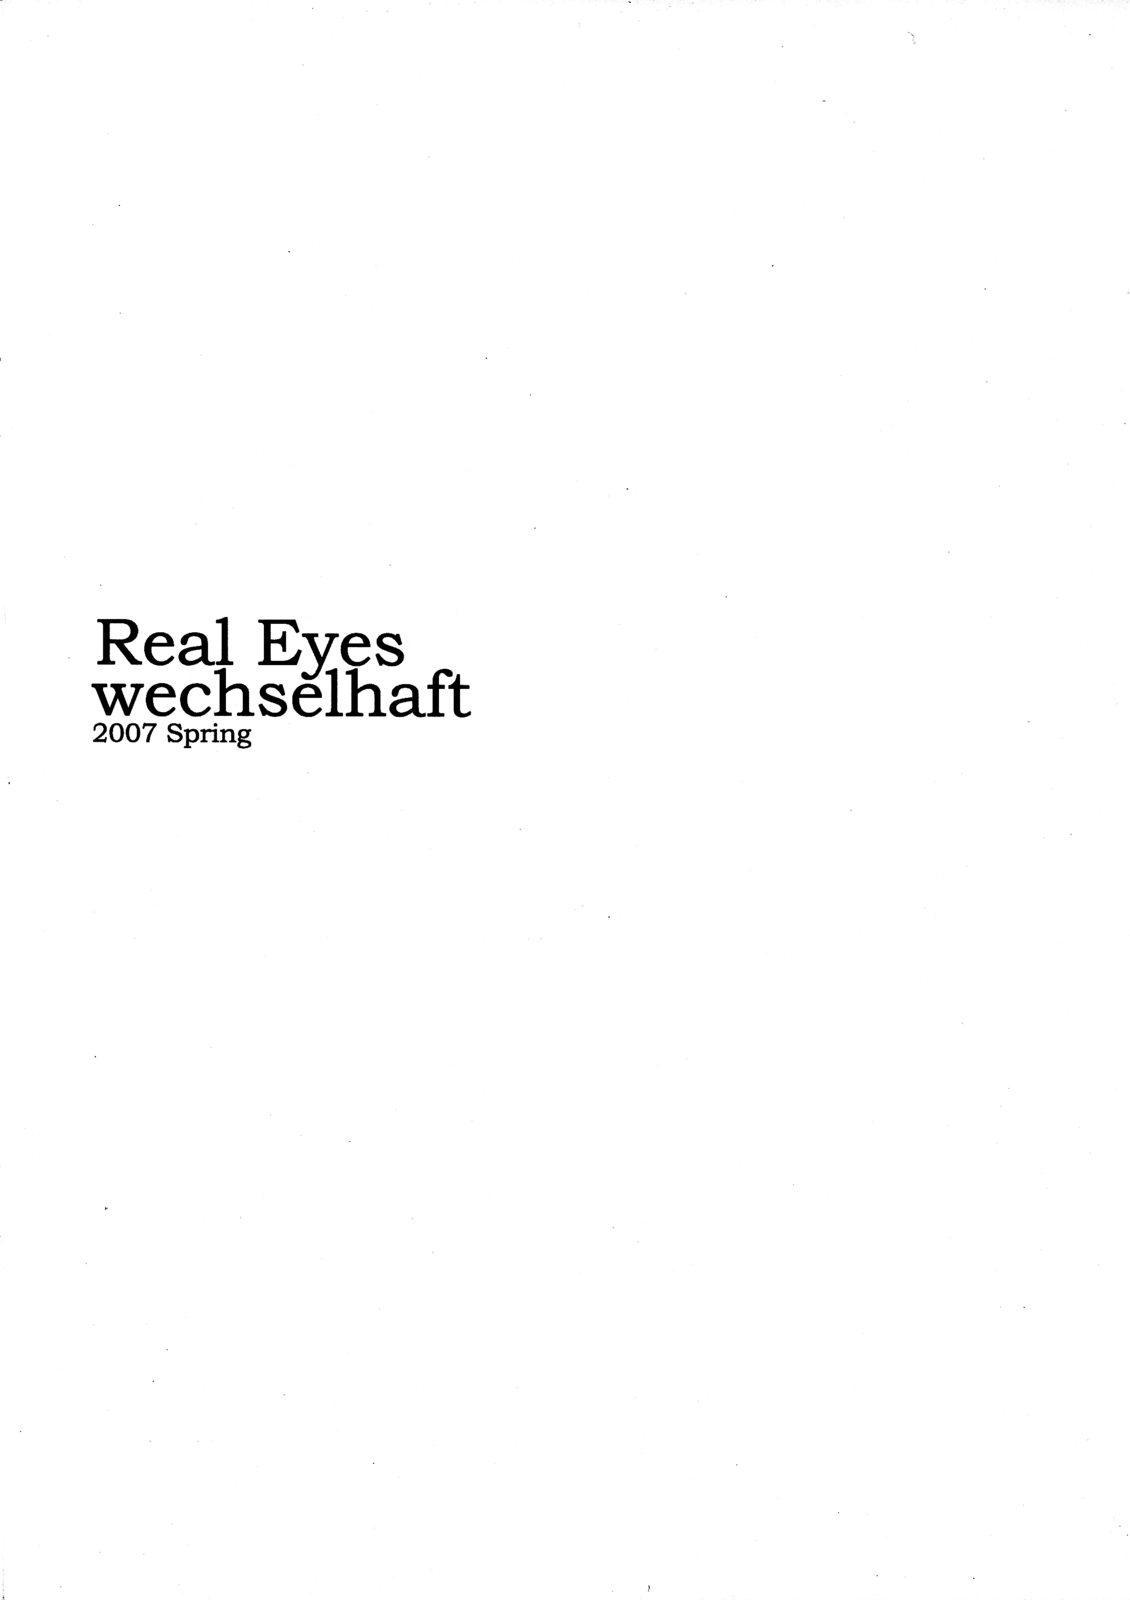 Real Eyes 16